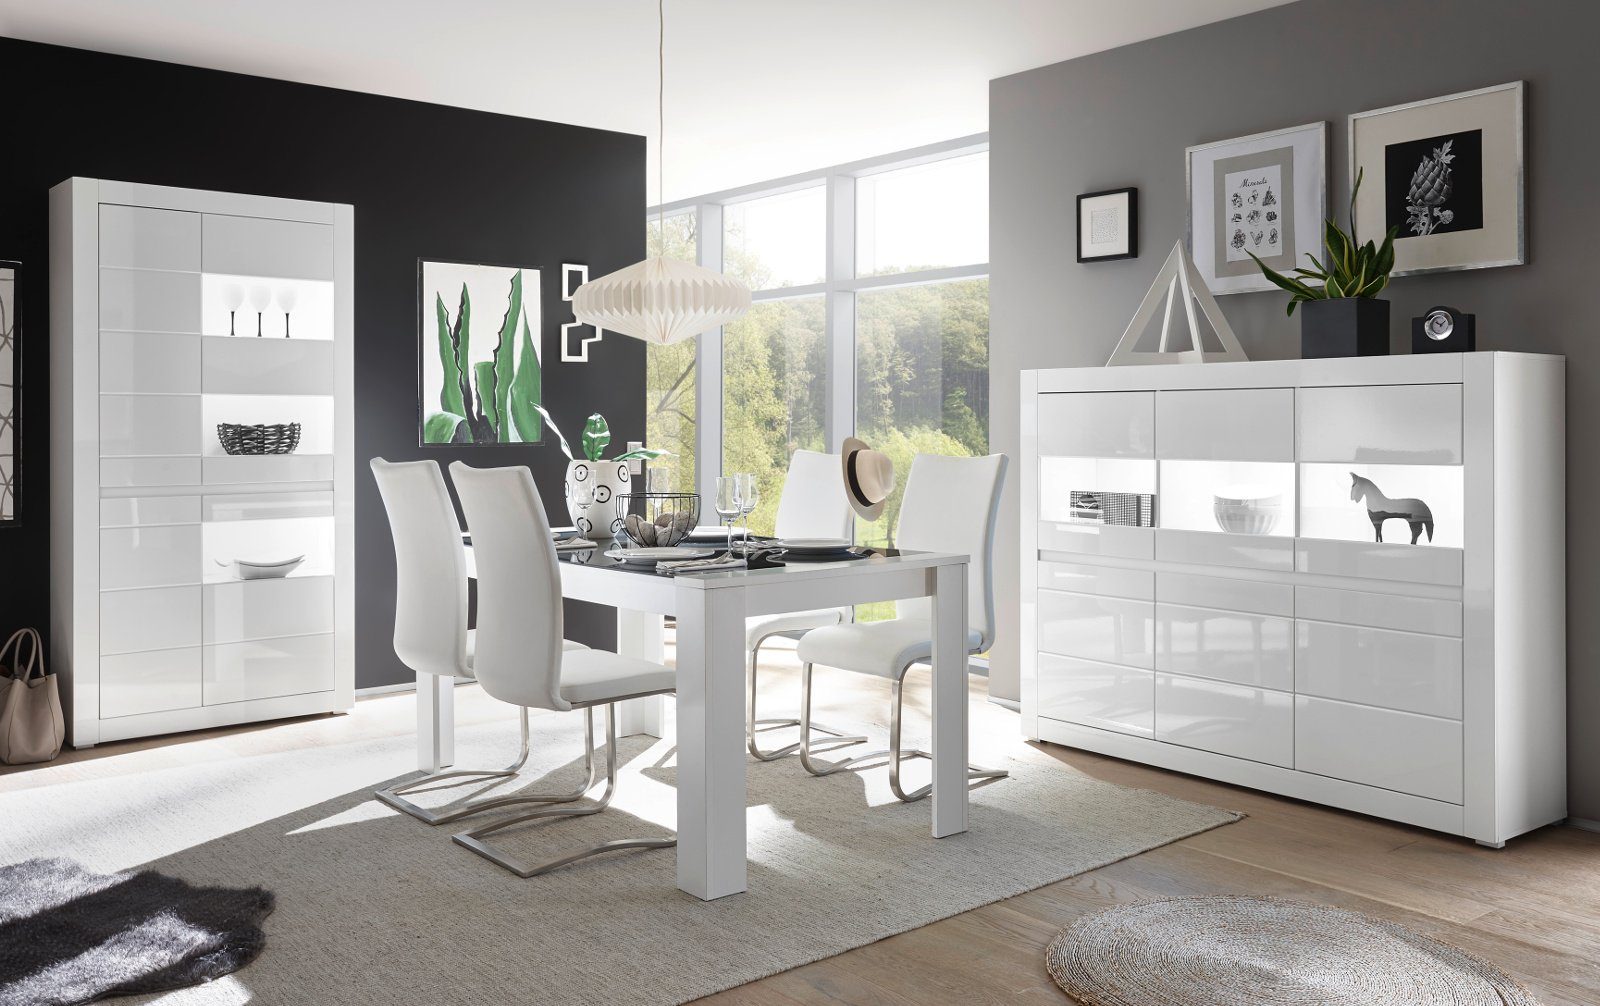 Furn.Design Wohnwand Nobile, Möbel-Set in mit Hochglanz, weiß), 4-teilig (Wohn- und Soft-Close Esszimmer